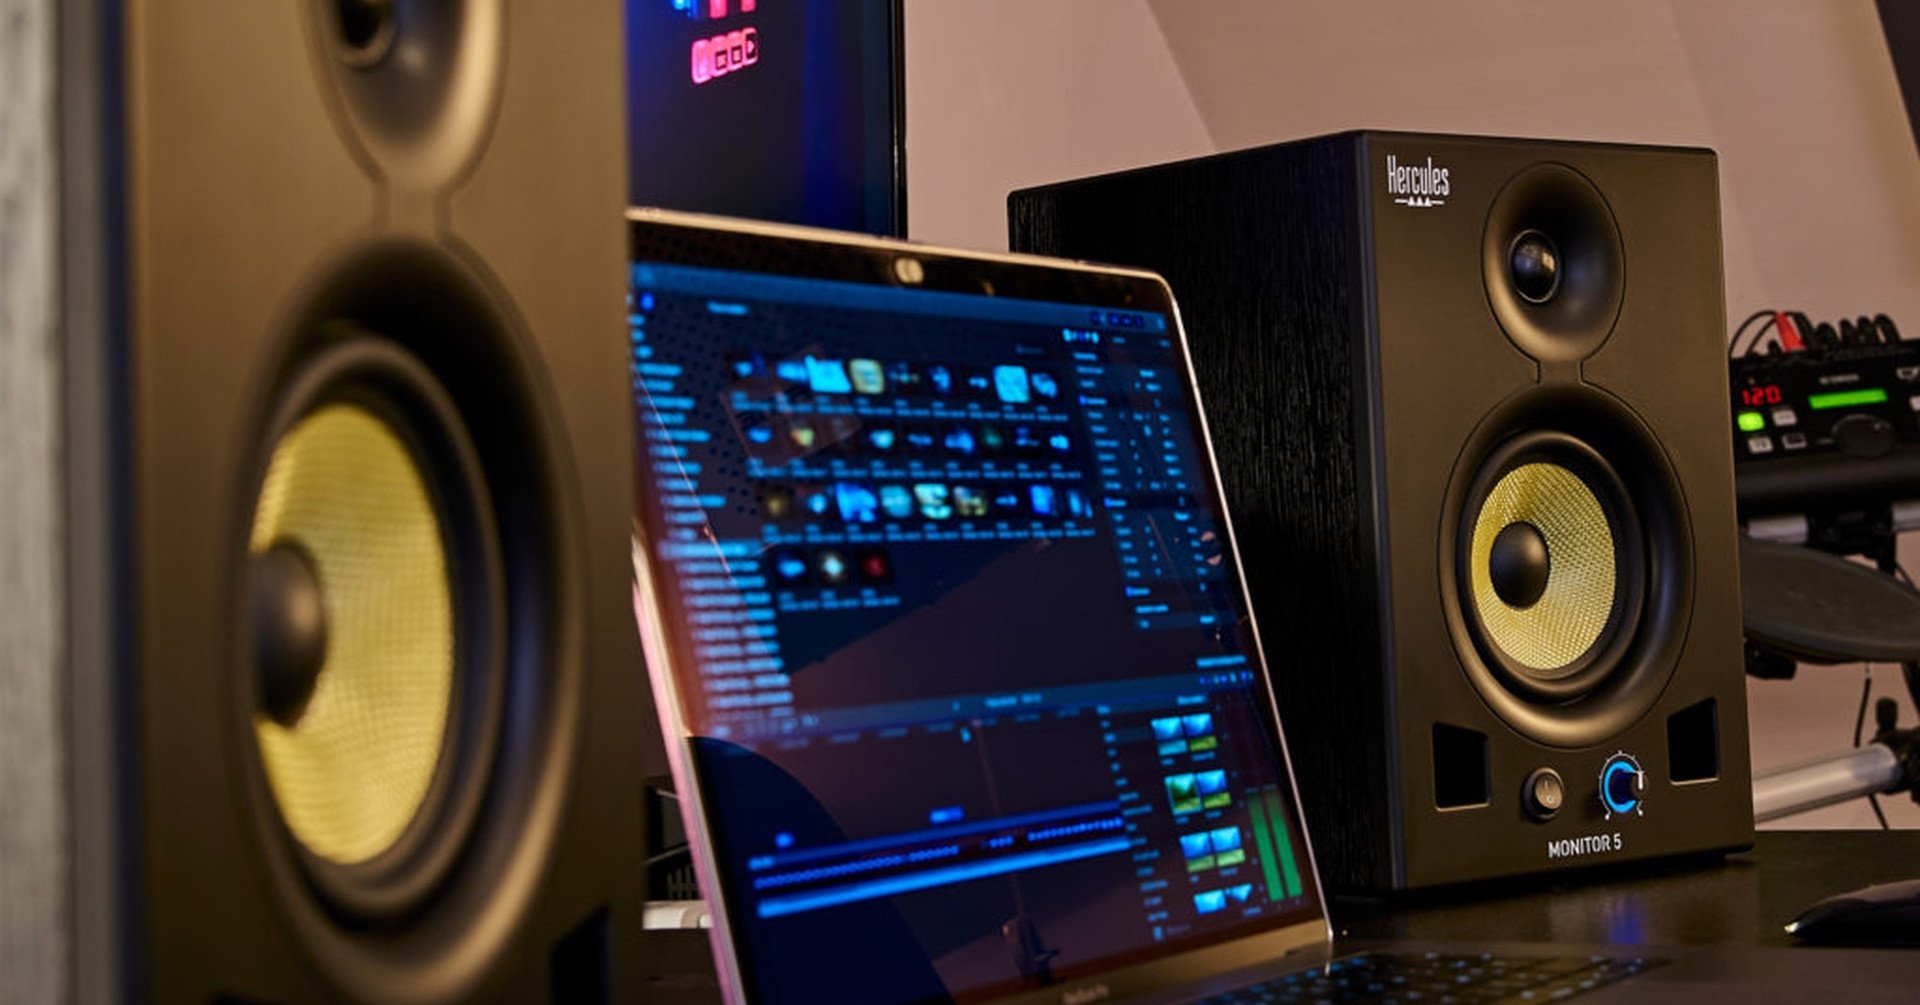 Głośniki Hercules Monitor 5 - najlepsza jakość za rozsądną cenę